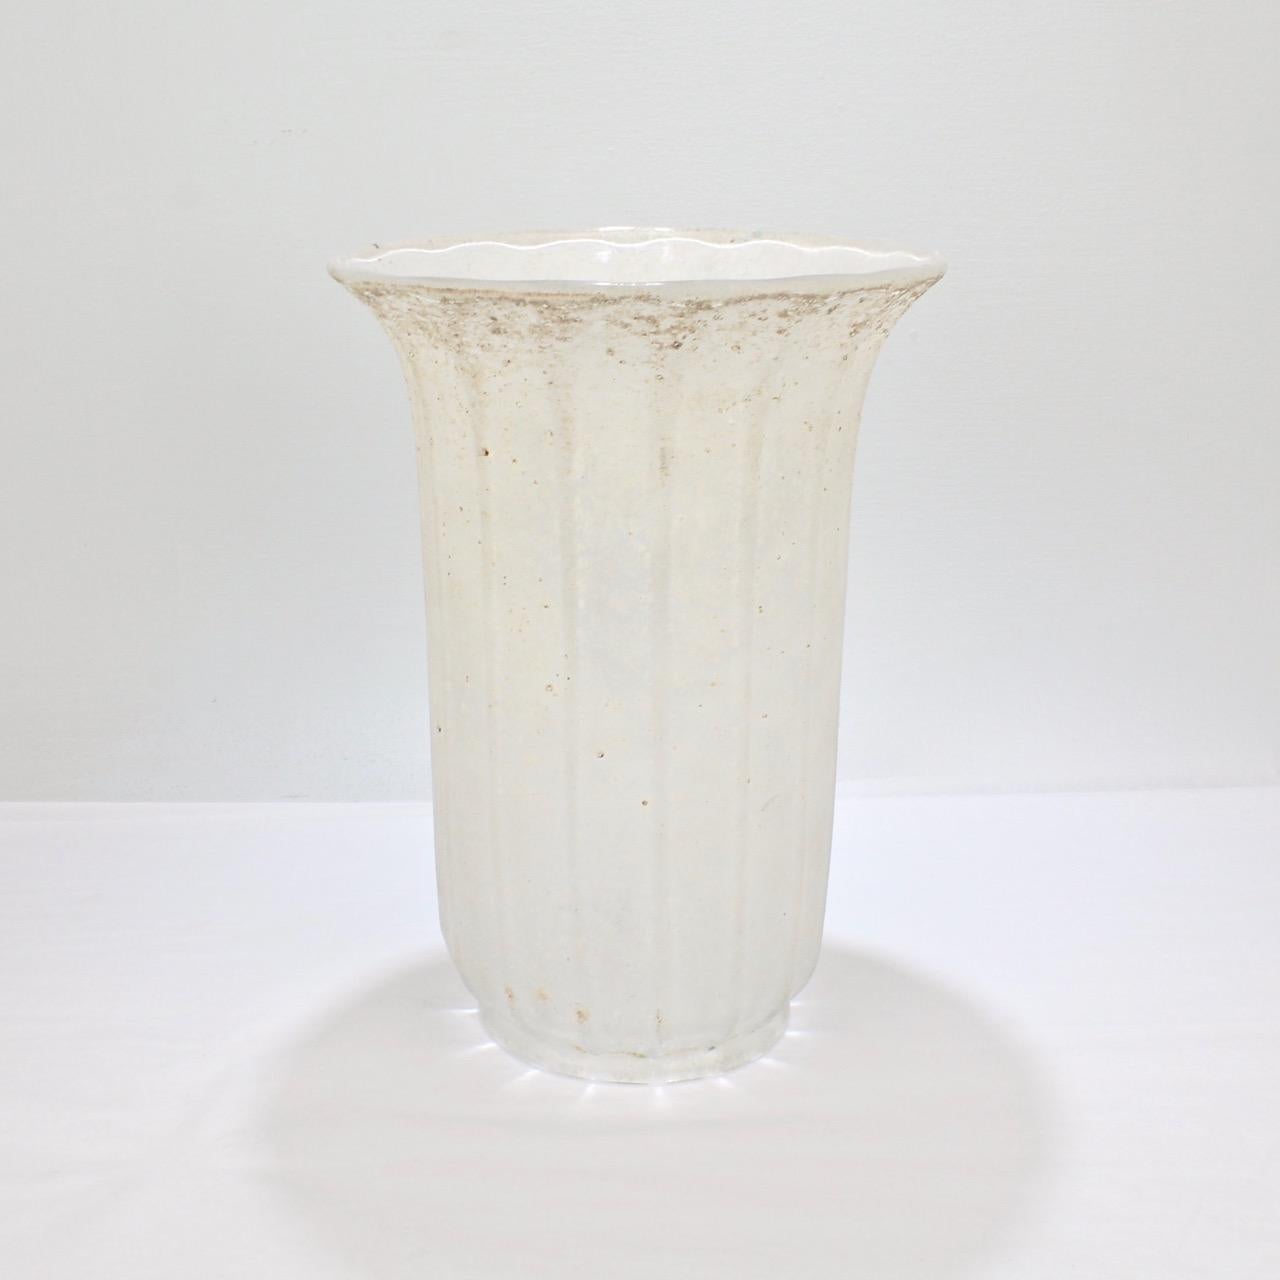 Eine große, weiße italienische Kunstglasvase in Scavo-Technik. 

Wird Archimede Seguso und Seguso Vetri d'Arte zugeschrieben.

Die weiße, strukturierte Oberfläche der Vase passt perfekt zu warm getönten Hölzern und mit satten Farben bemalten